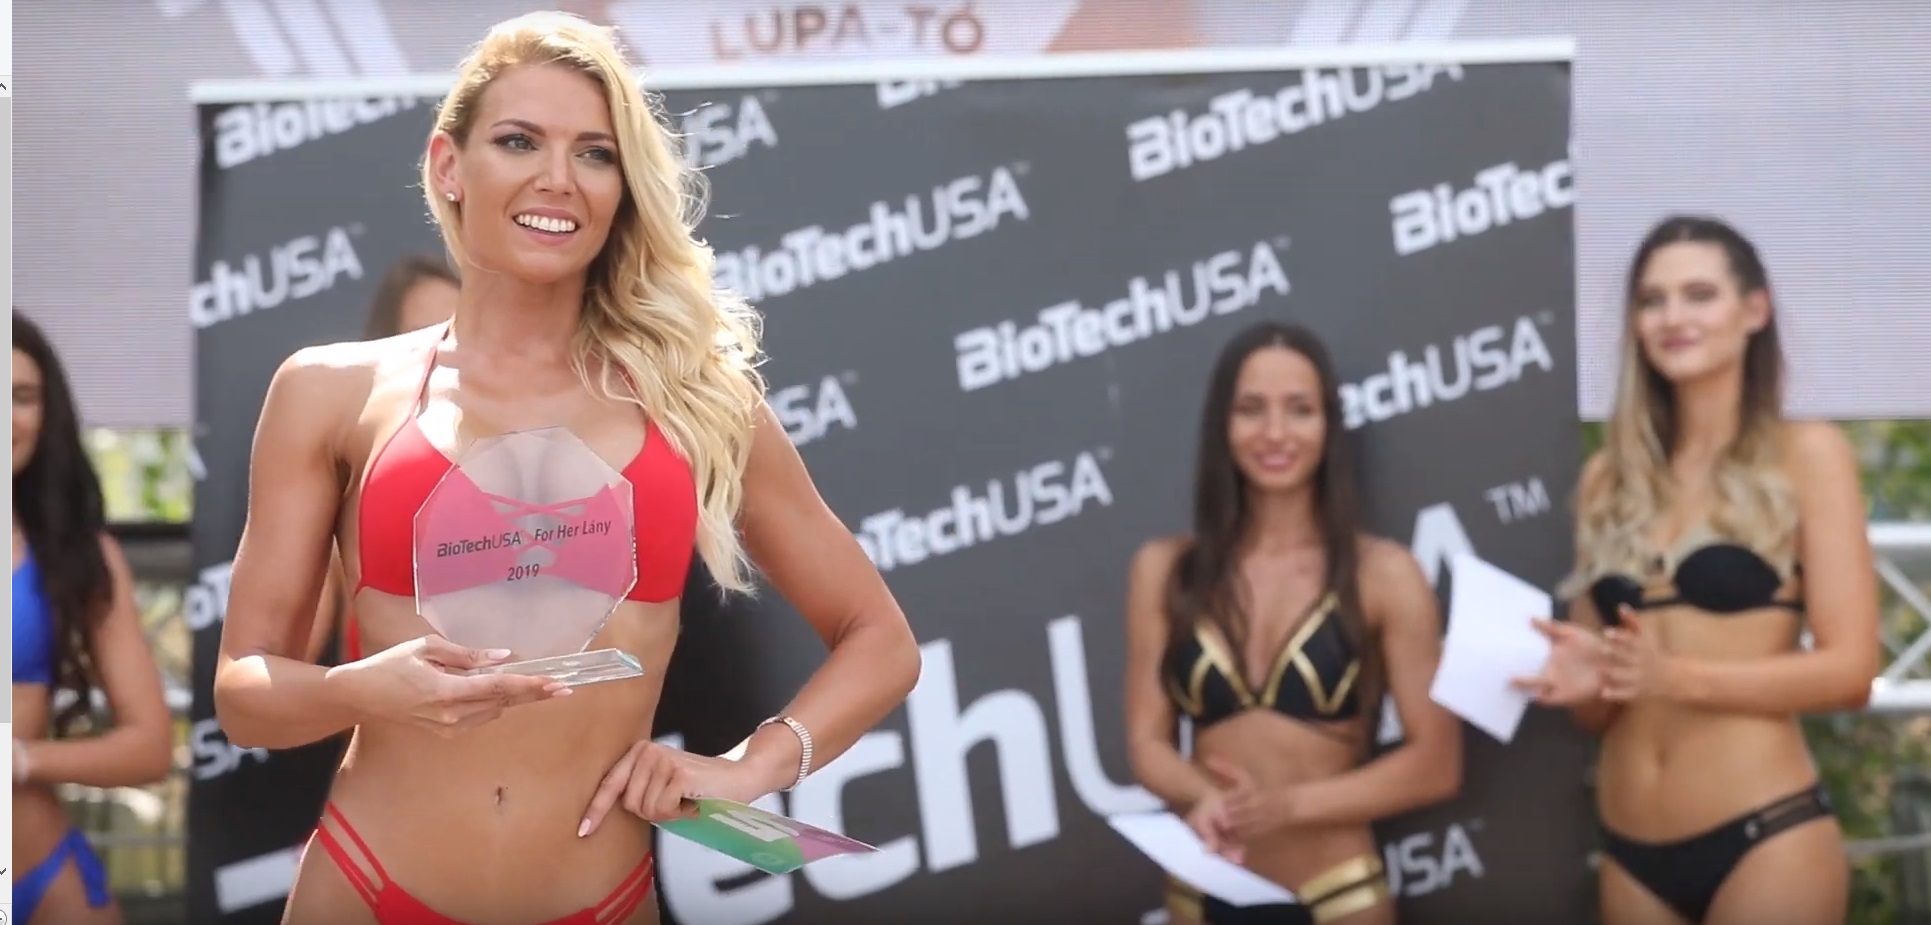 A legszexibb mind közül: ez a lány nyerte a Lupa Beachen megrendezett  bikinis szépségversenyt – videó - Blikk